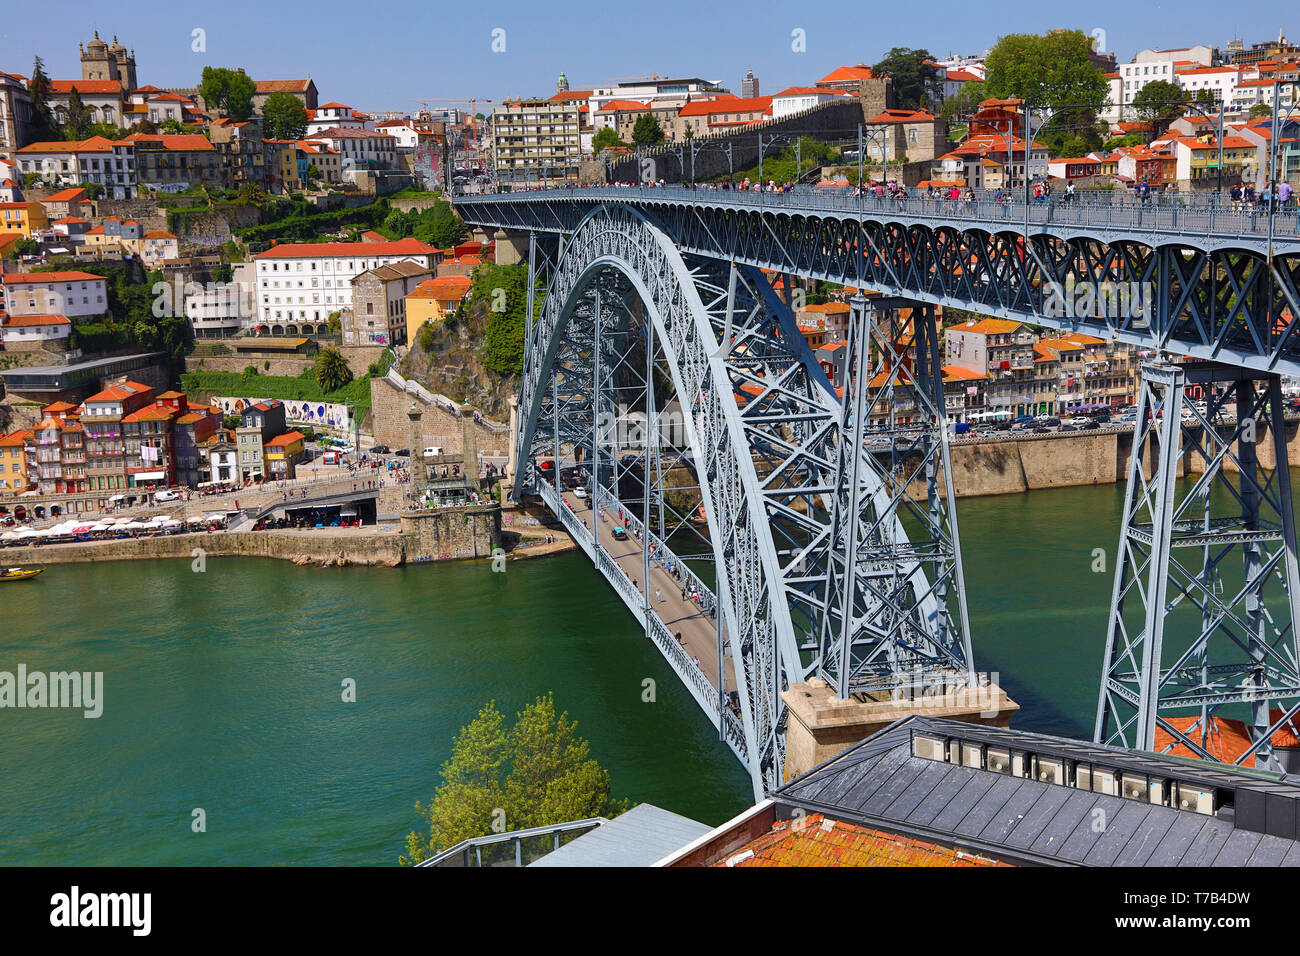 The Dom Luis I metal arch bridge over the Douro River in Porto, Portugal Stock Photo